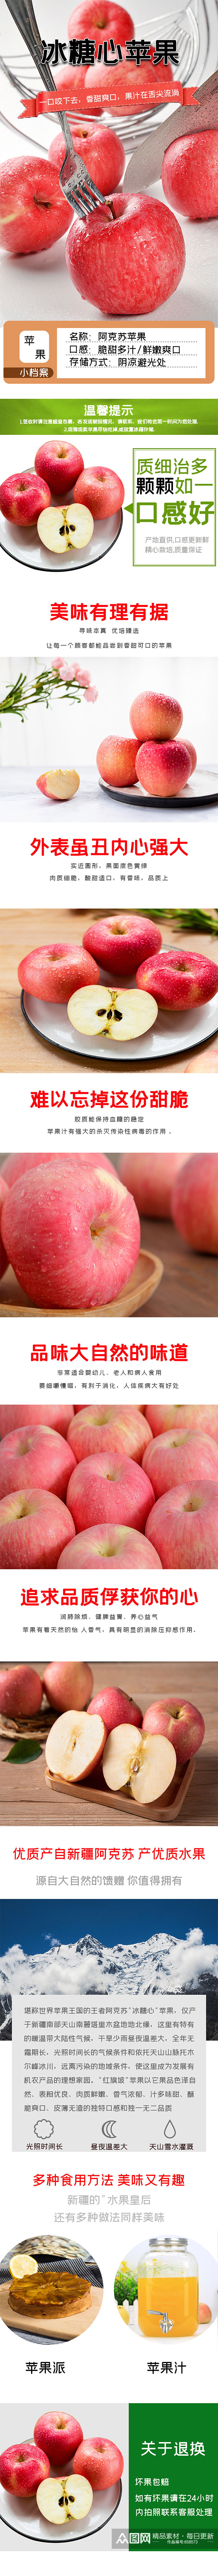 苹果水果糖心蔬菜新鲜暖色美食详情页素材